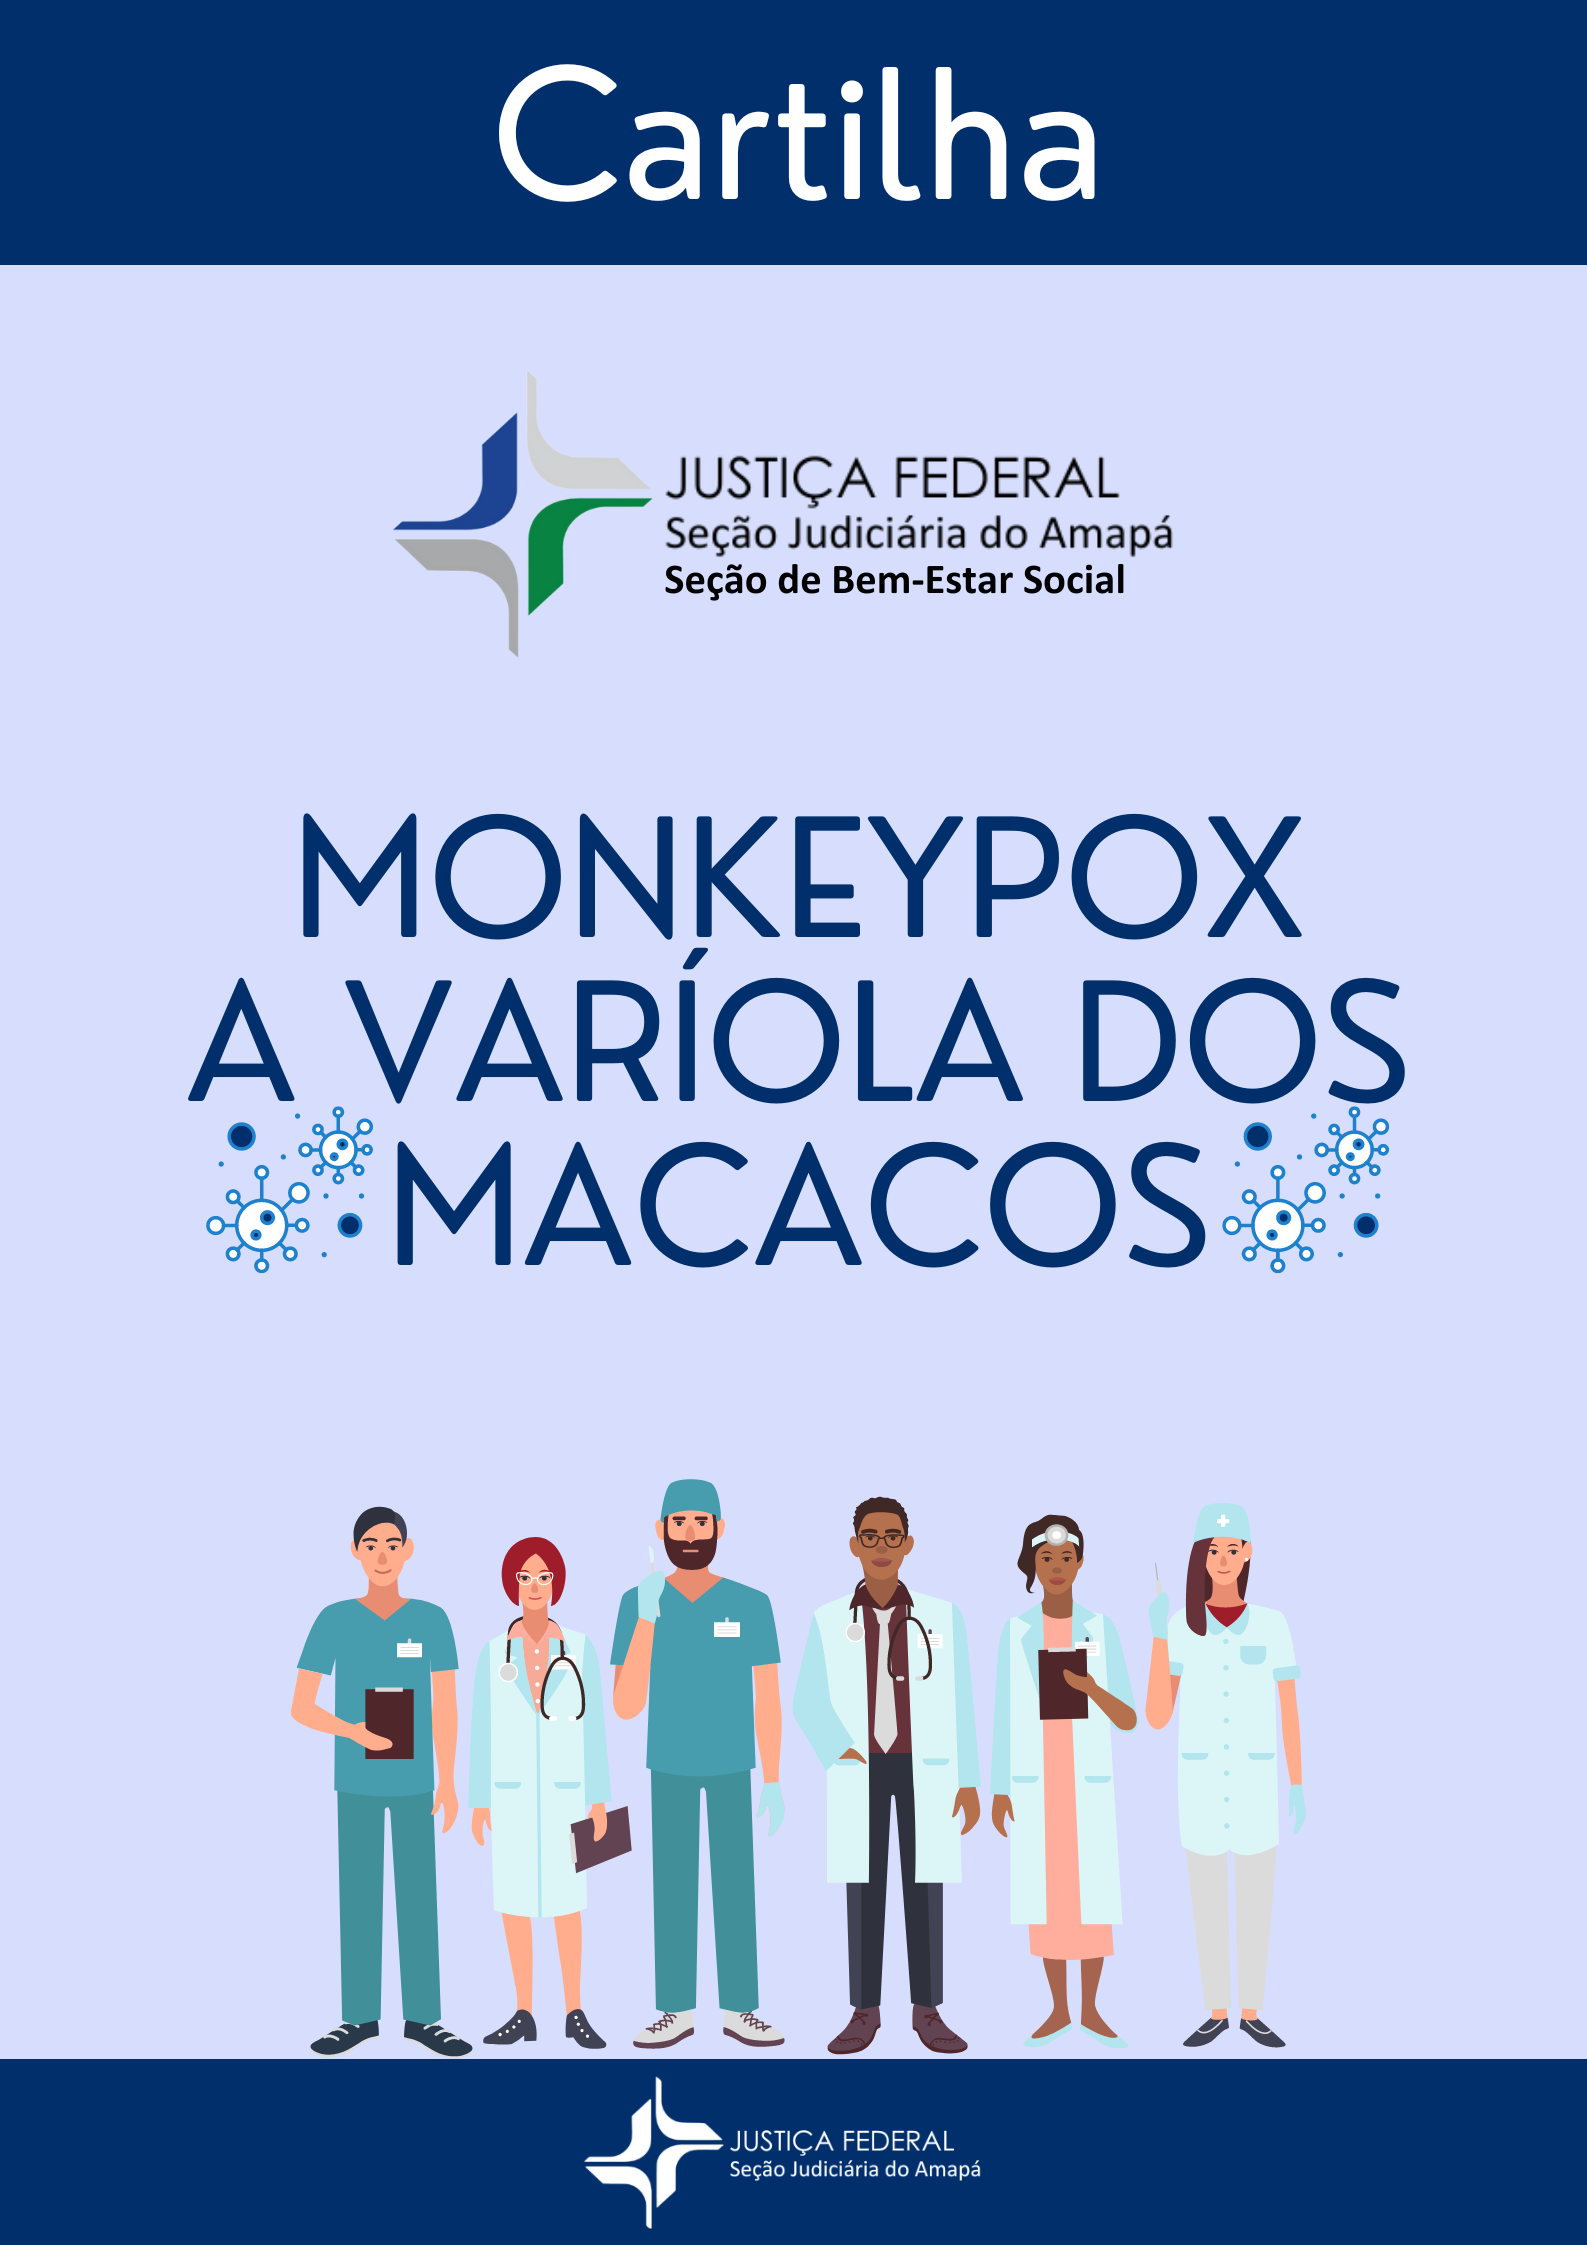 Capa da cartilha com titulo Monkeypox - A varíola dos macacos, com ilustrações de profissionais da saúde.